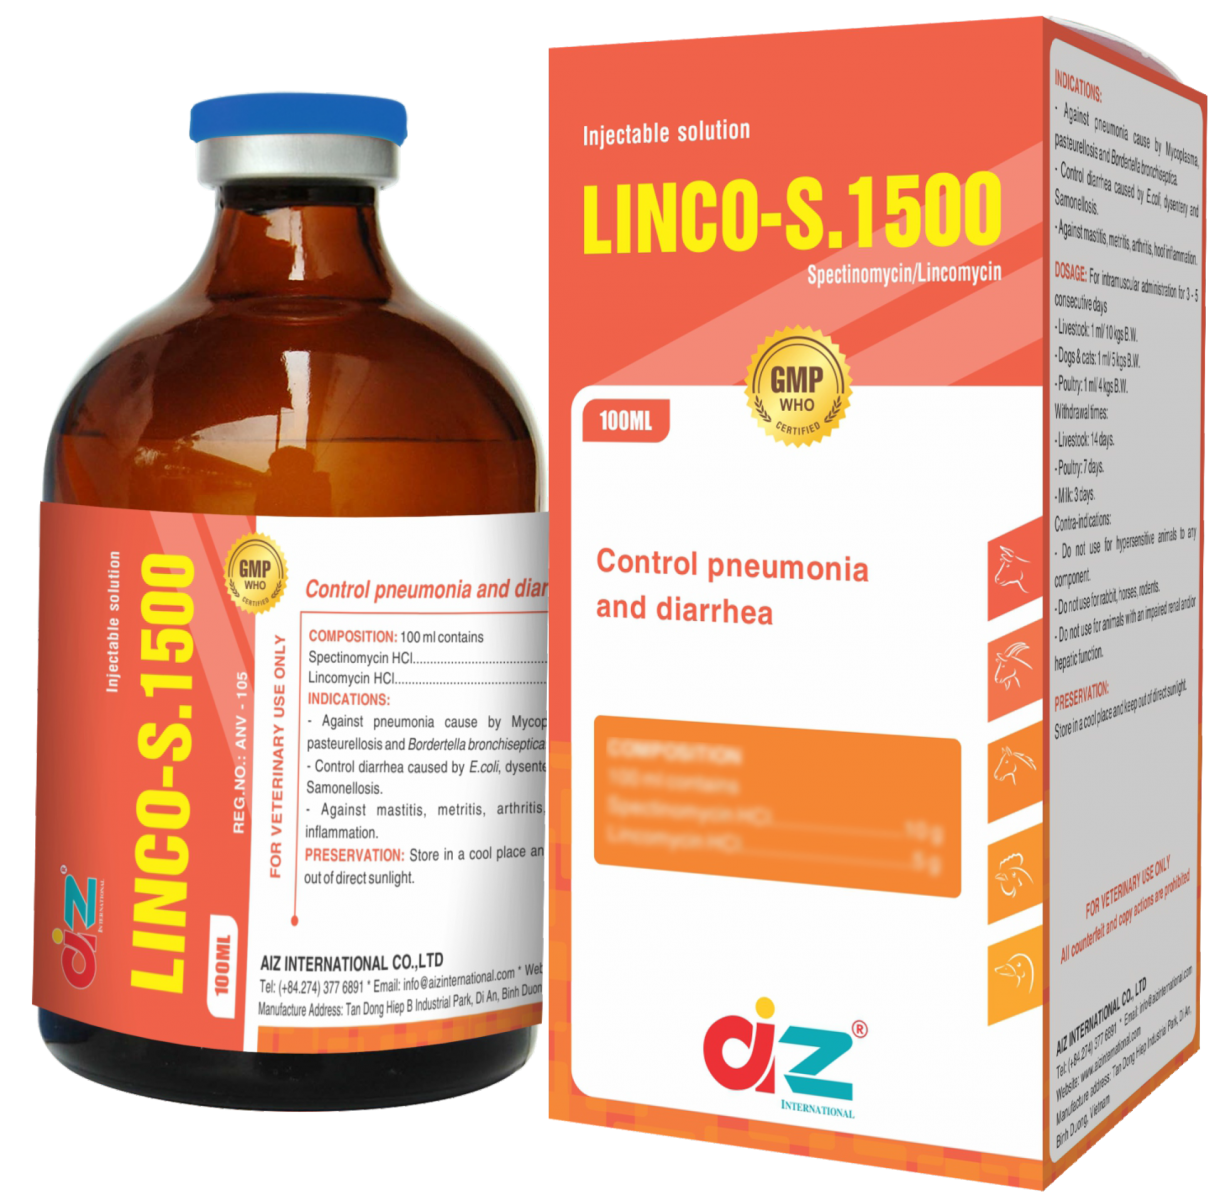 LINCO-S.1500